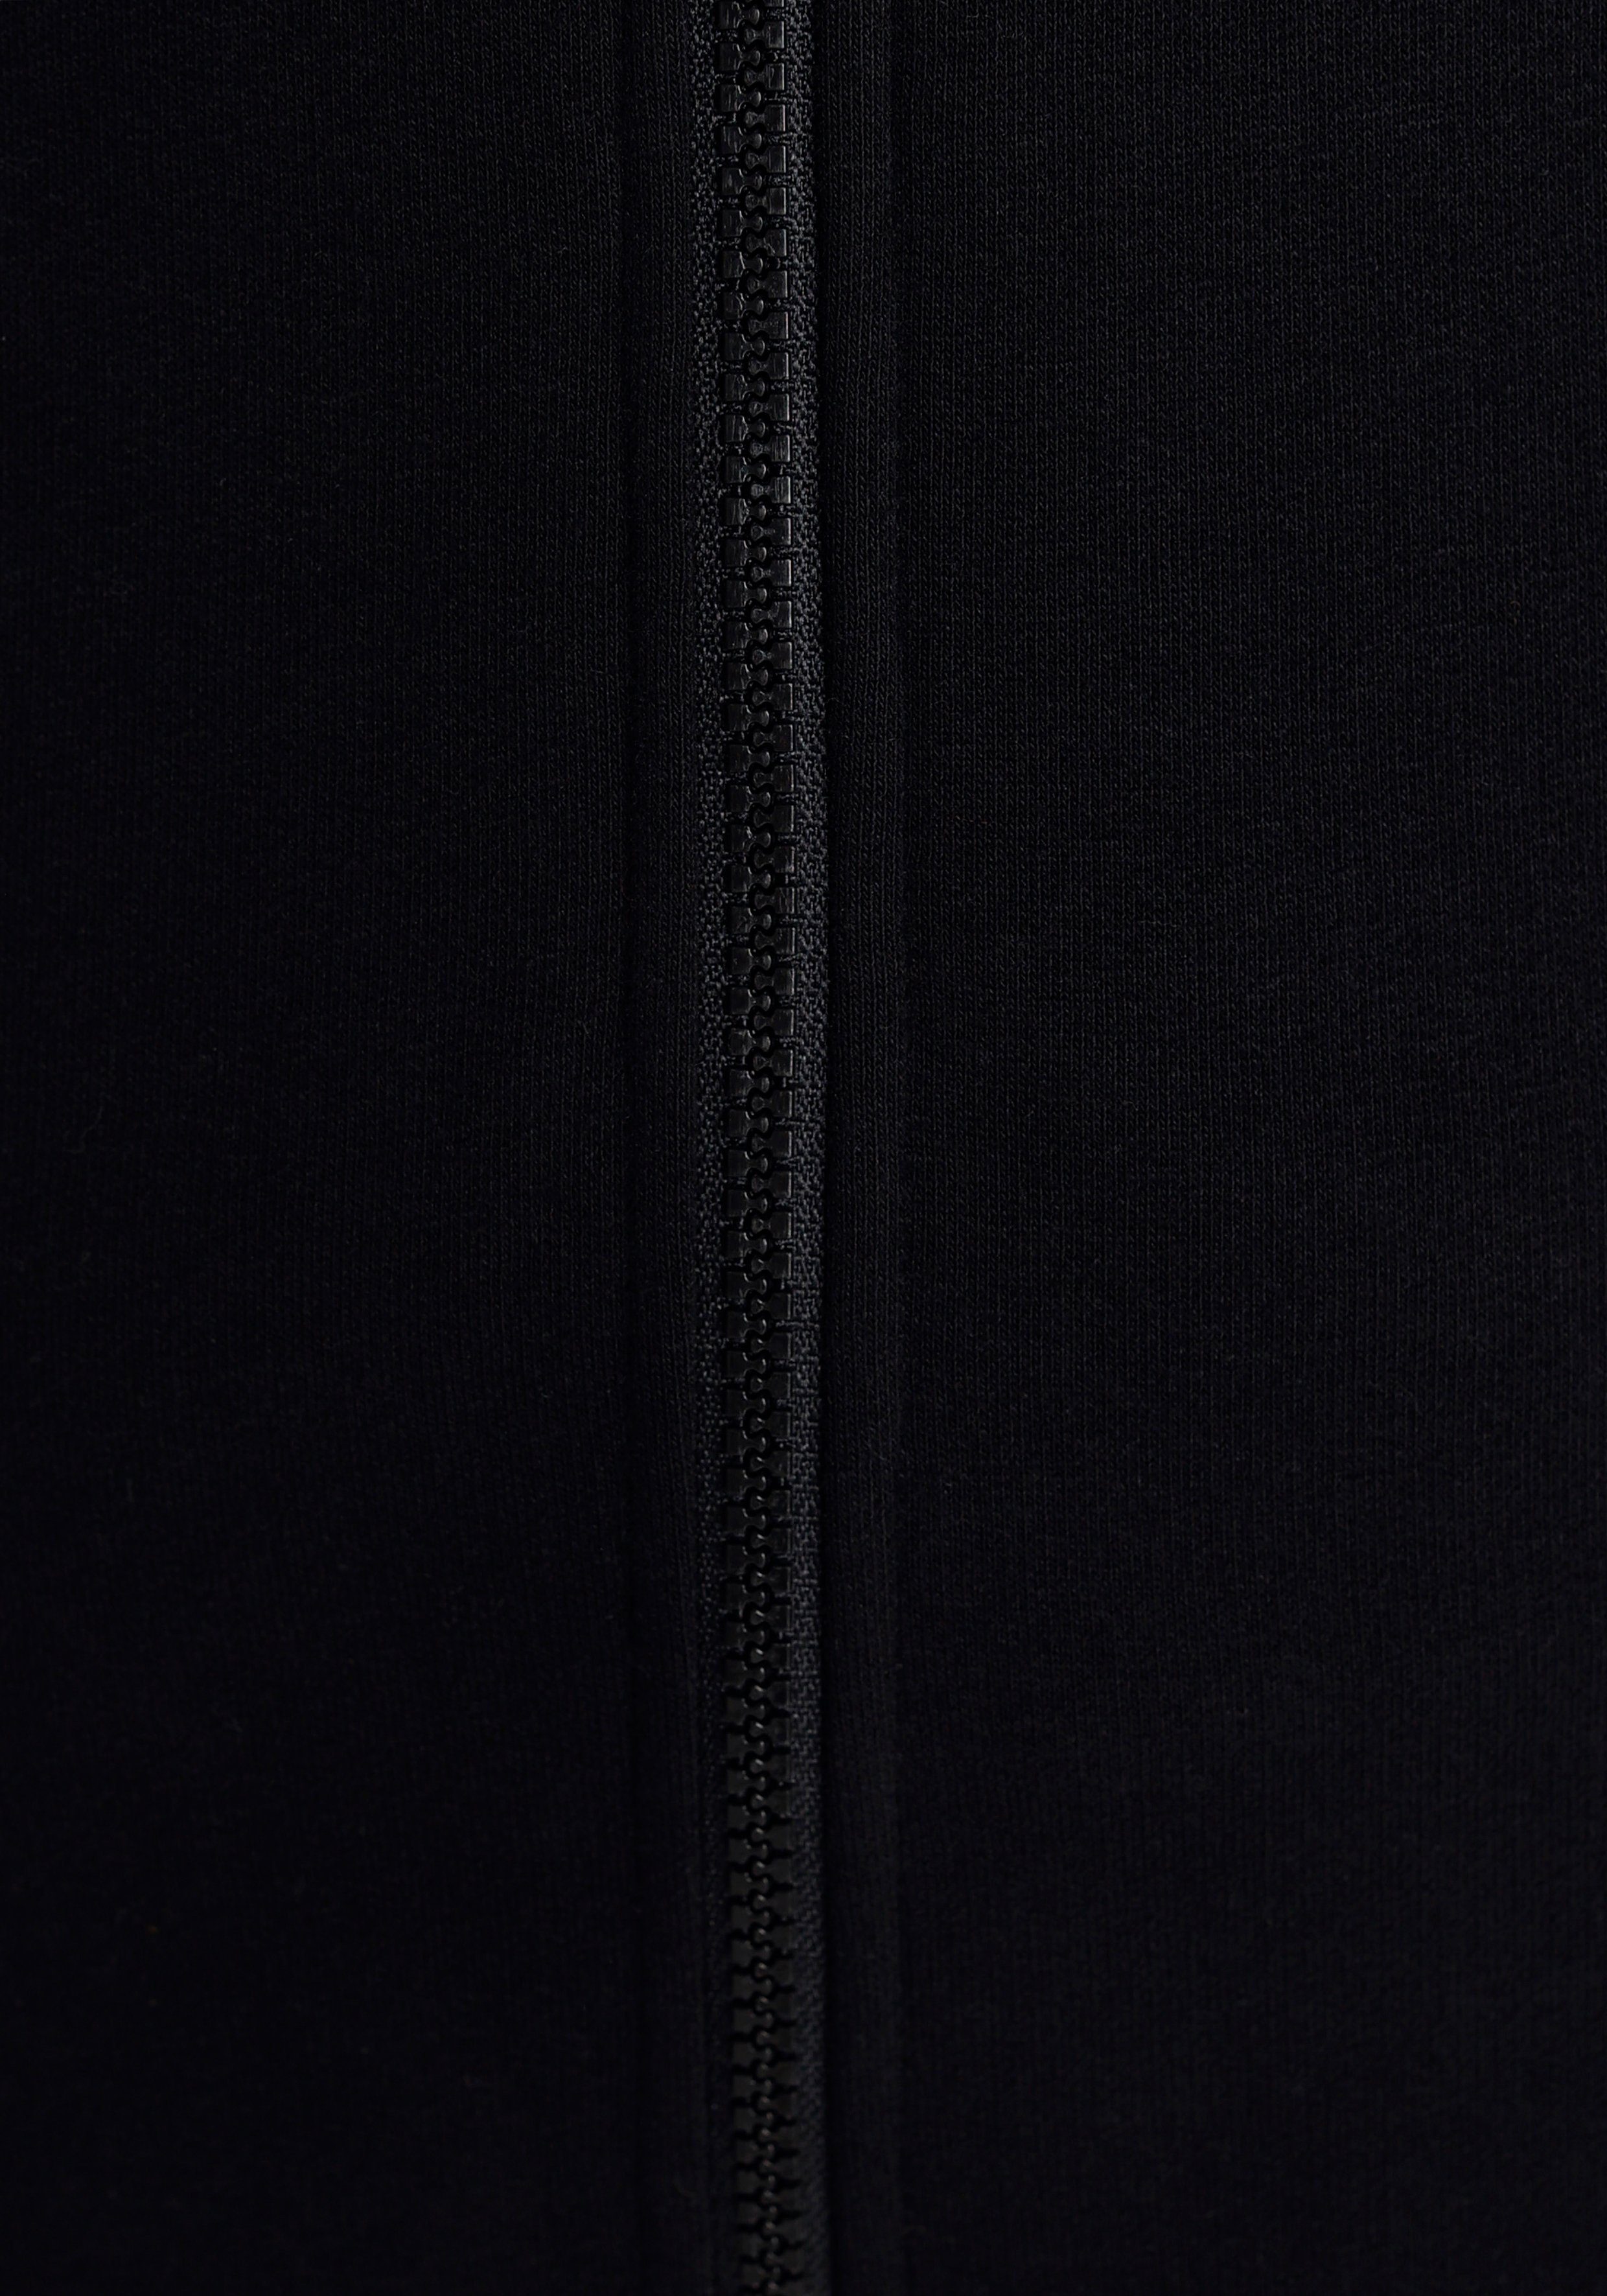 KOLLEKTION & French-Terry schwarz - aus weichem KangaROOS Kapuzensweatjacke NEUE besonders dickem